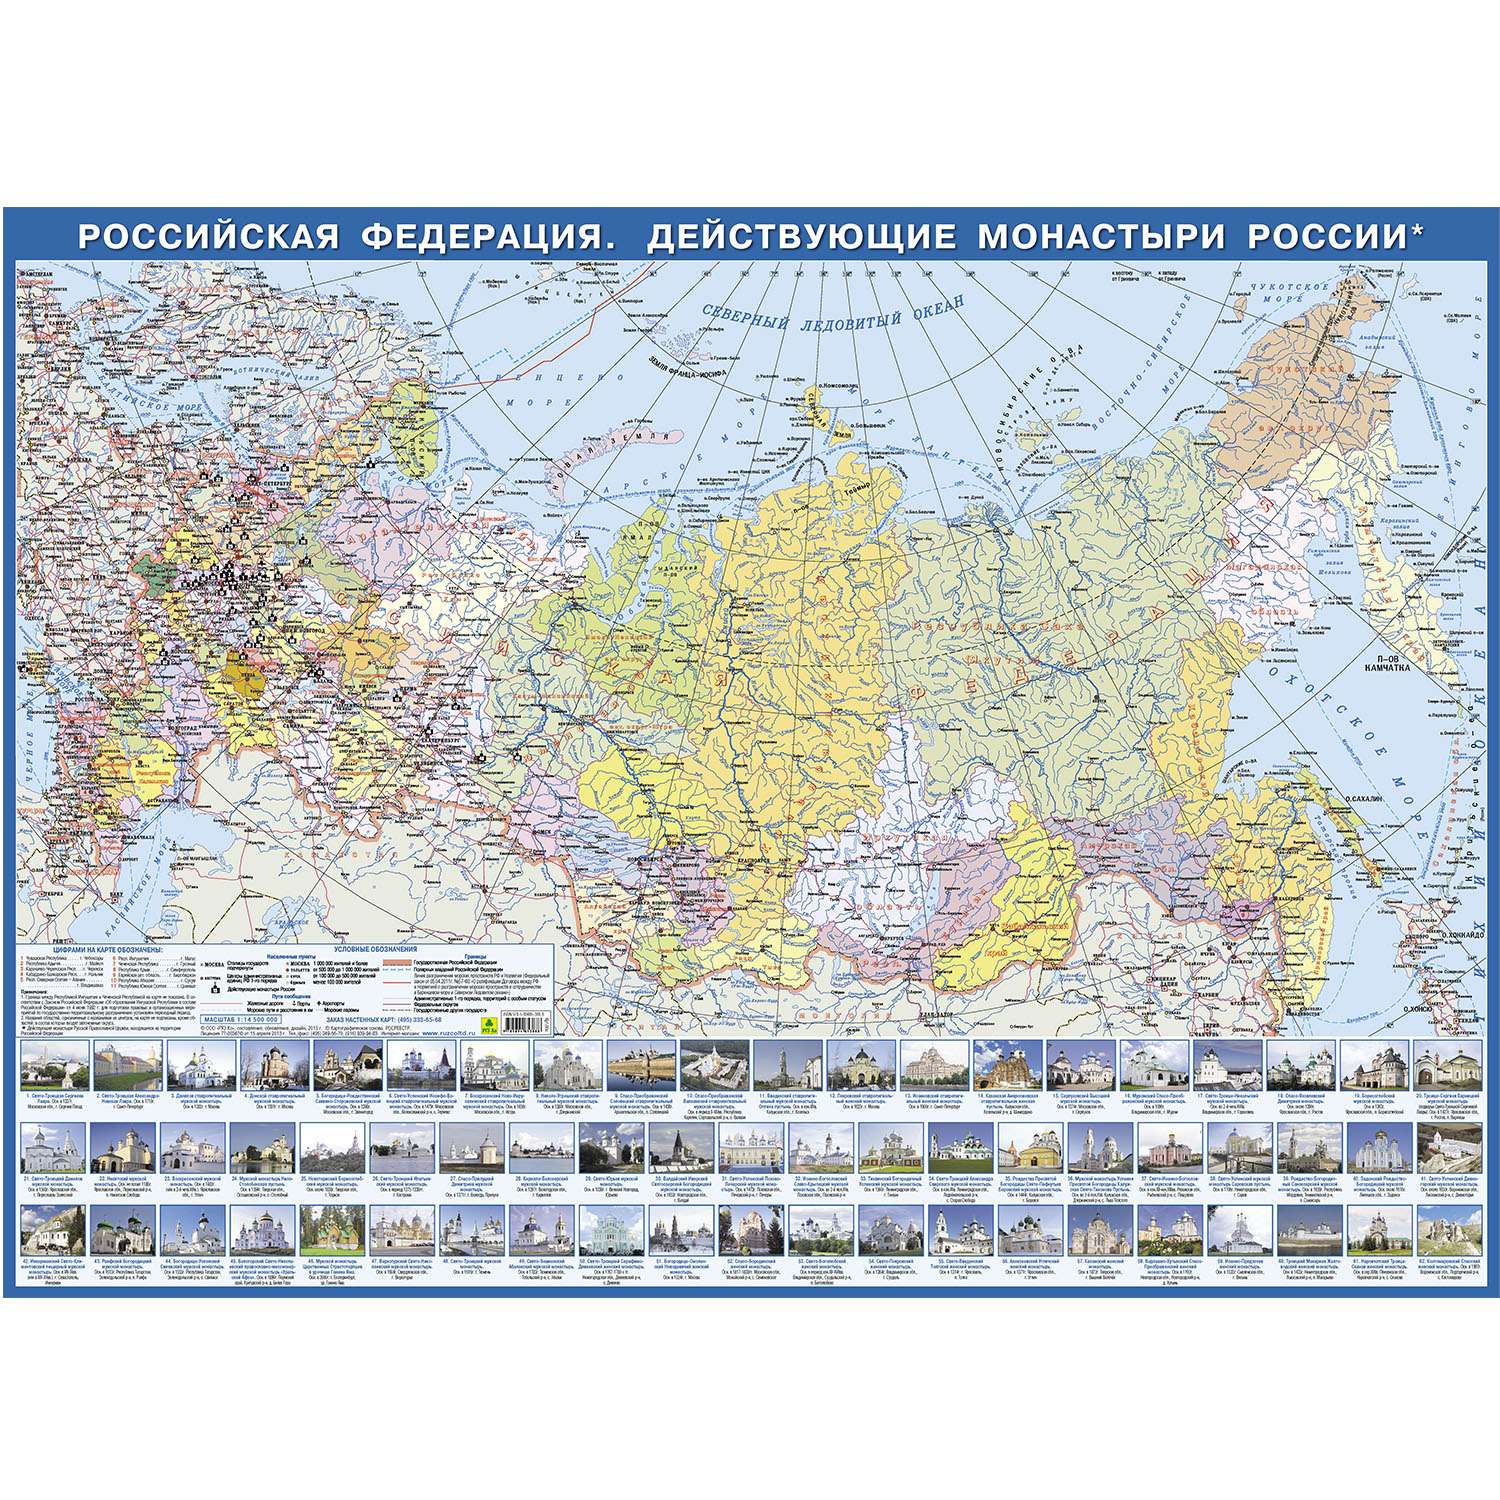 Монастыри действующие на карте. Карта монастырей России. Российская Федерация действующие монастыри России плакат.